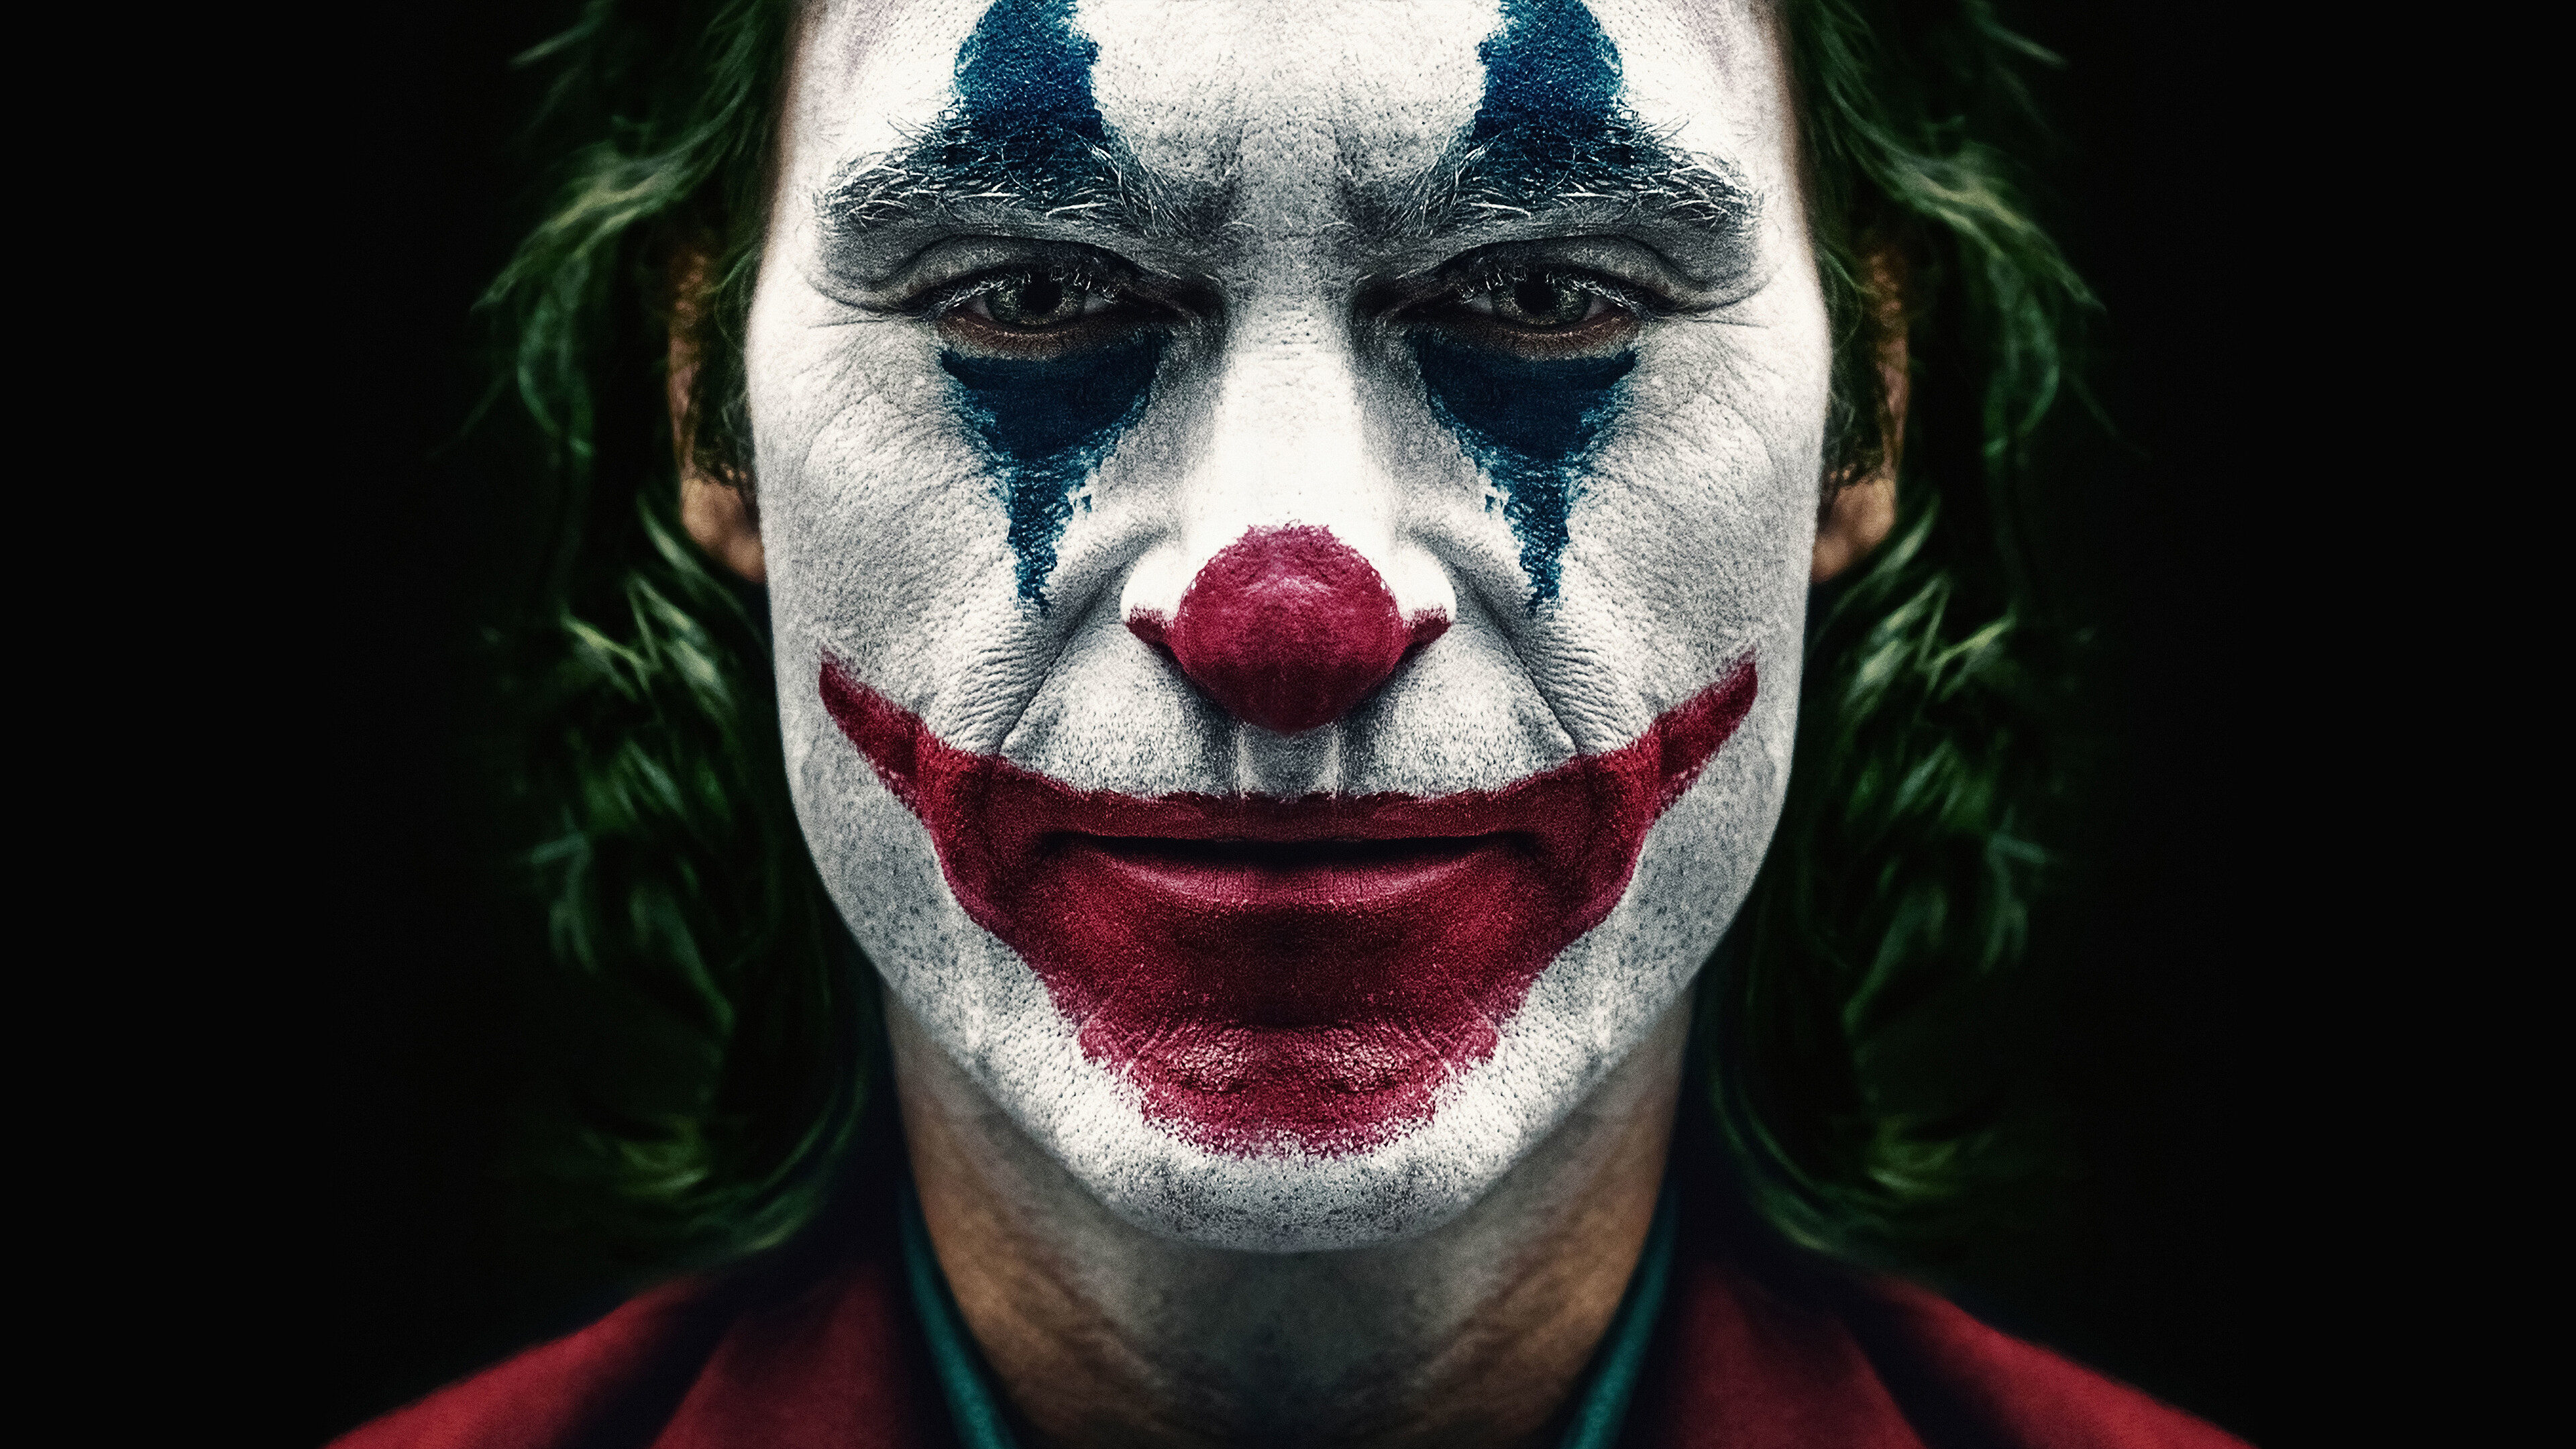 Joker 2019 , HD Wallpaper & Backgrounds